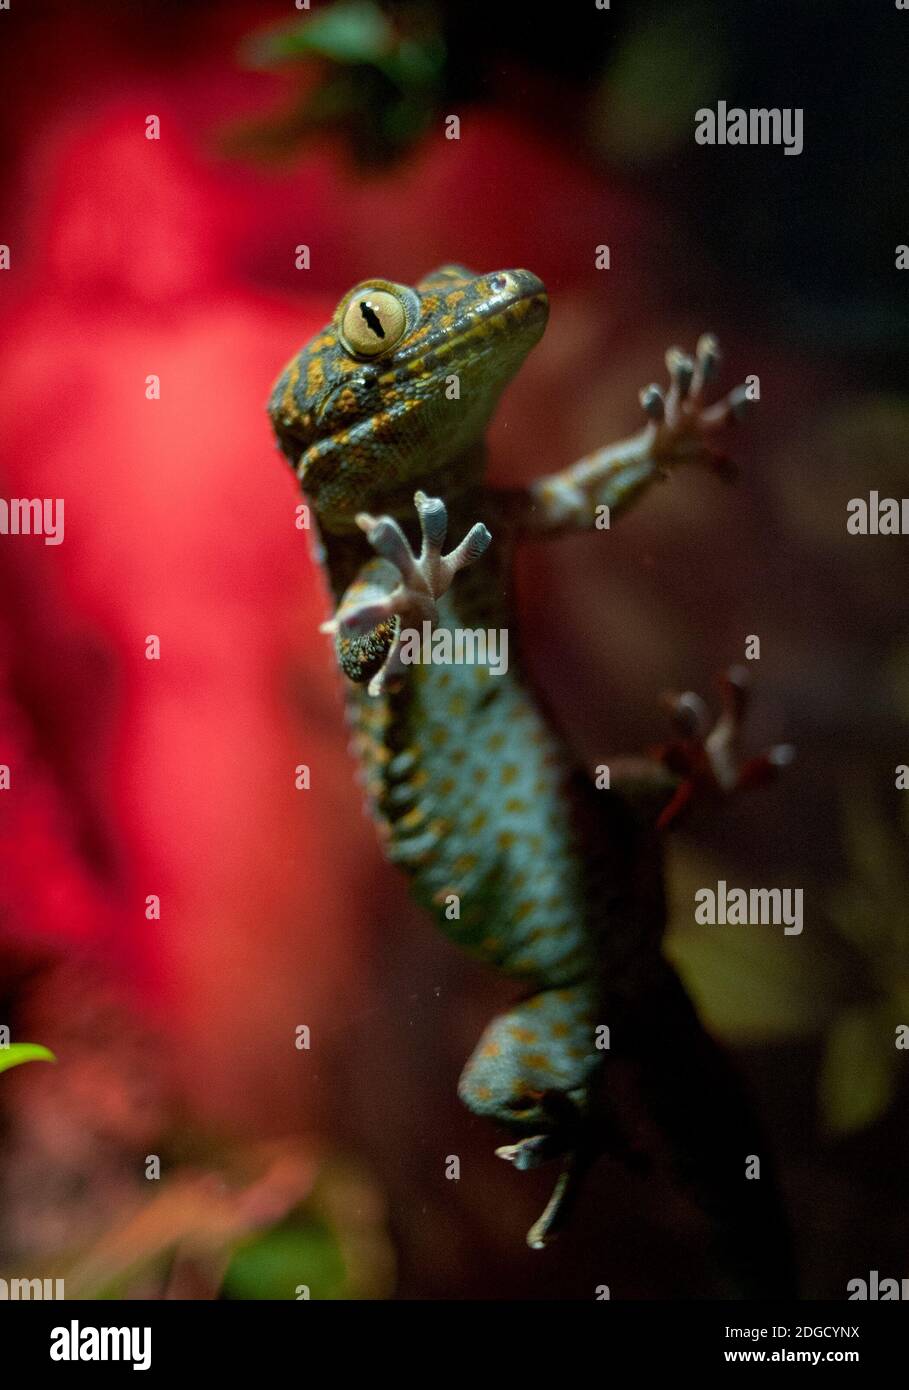 Tokay gecko Stockfoto